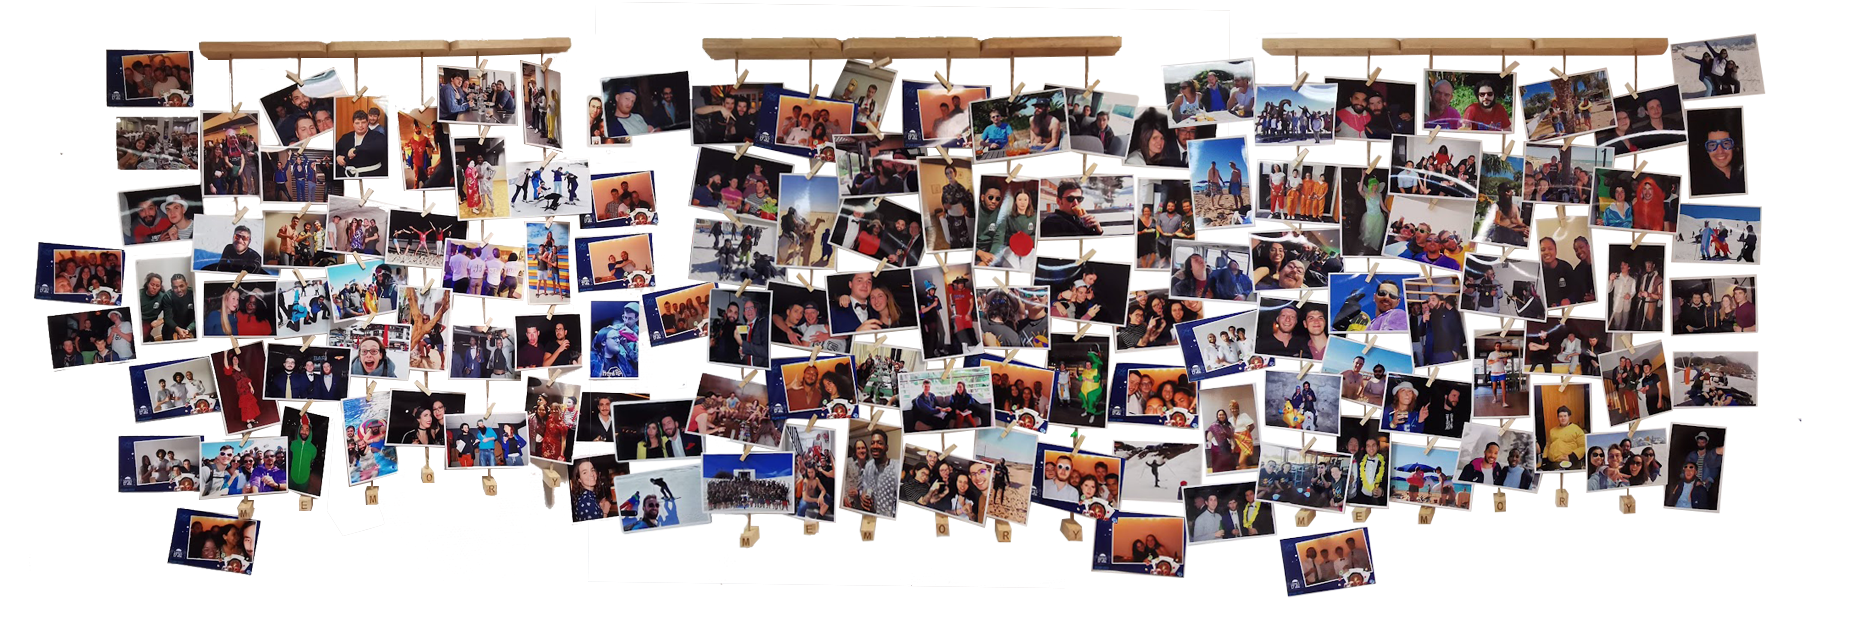 Mur de photos de l’équipe d’Oxyl accrochées à des fils avec des pinces, illustrant divers événements et moments de convivialité entre collègues